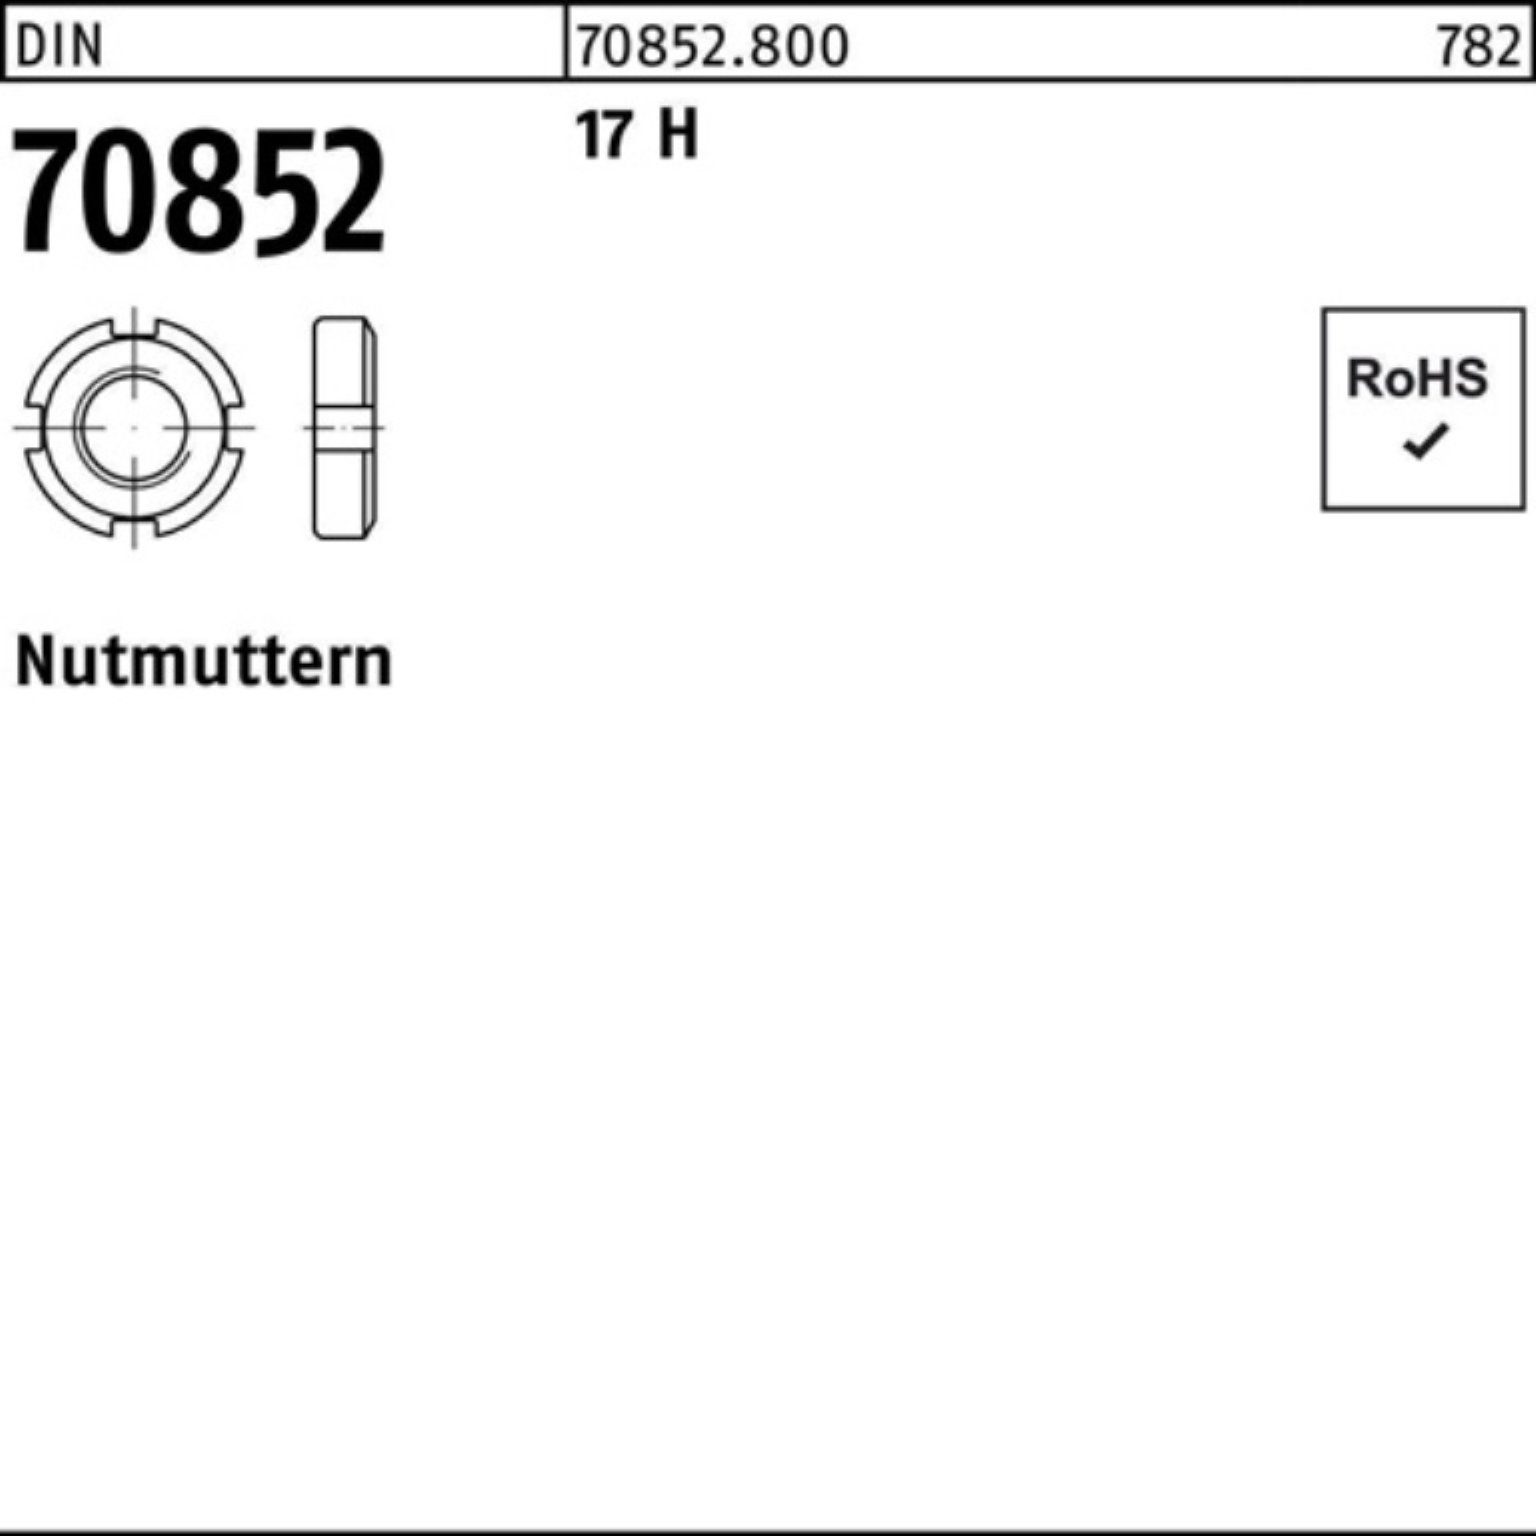 Reyher Nutmutter 100er Pack Nutmutter DIN 70852 M32x 1,5 17 H 1 Stück DIN 70852 17 H N